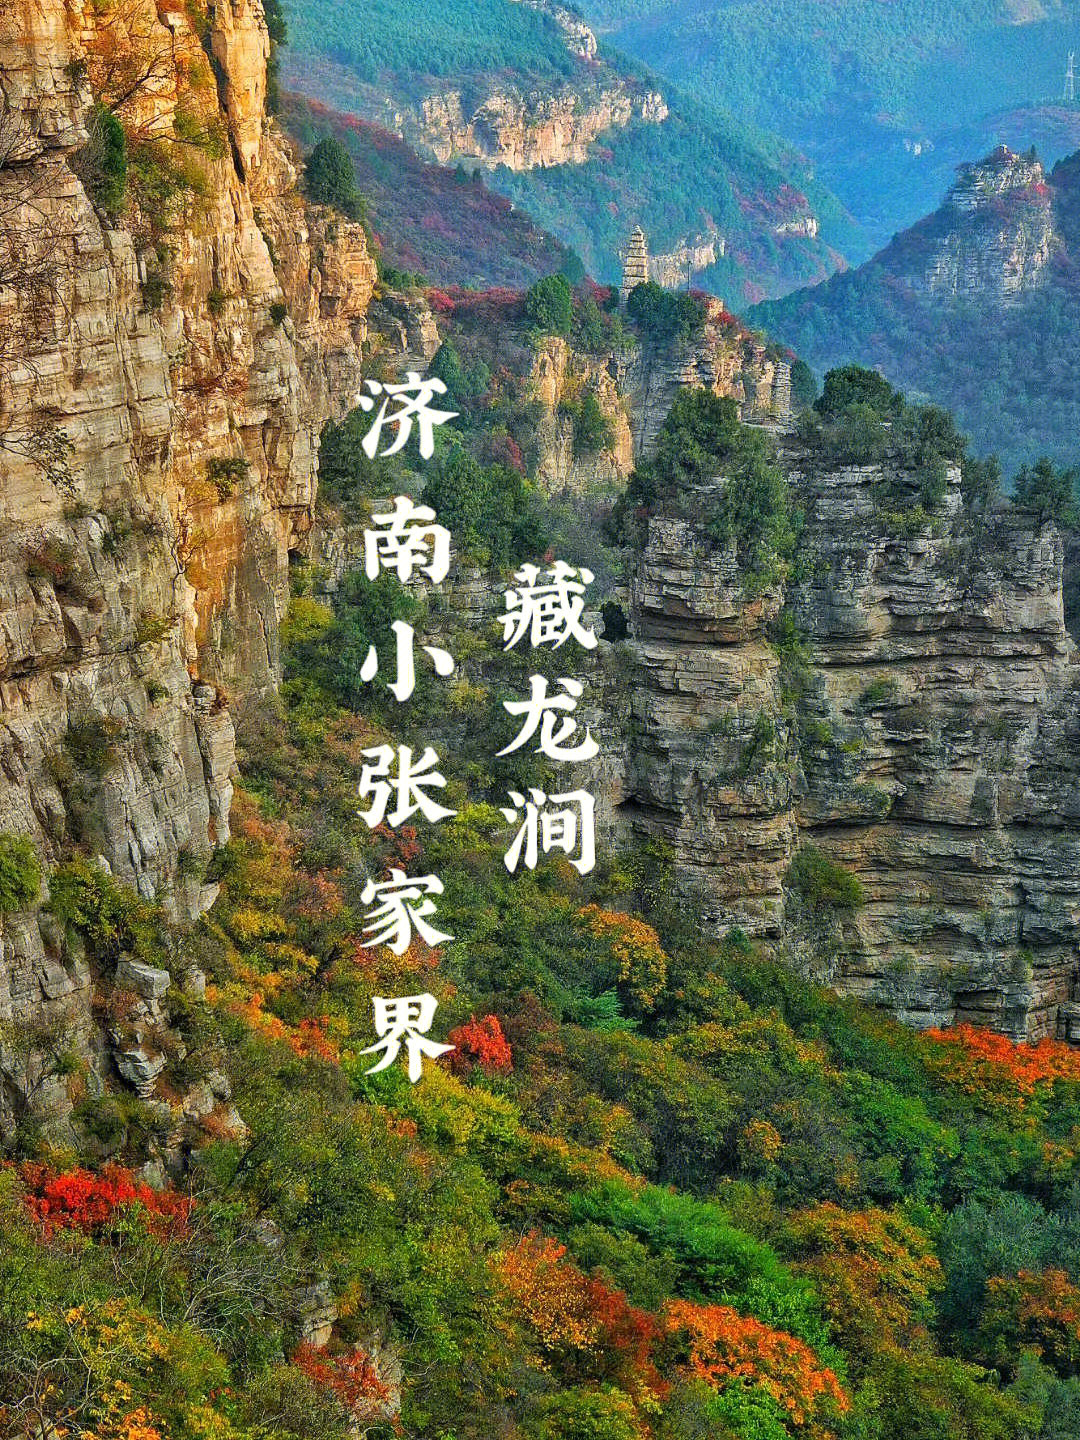 藏龙涧的秋天无疑是济南免费赏秋的天花板99作为济南八景之首的